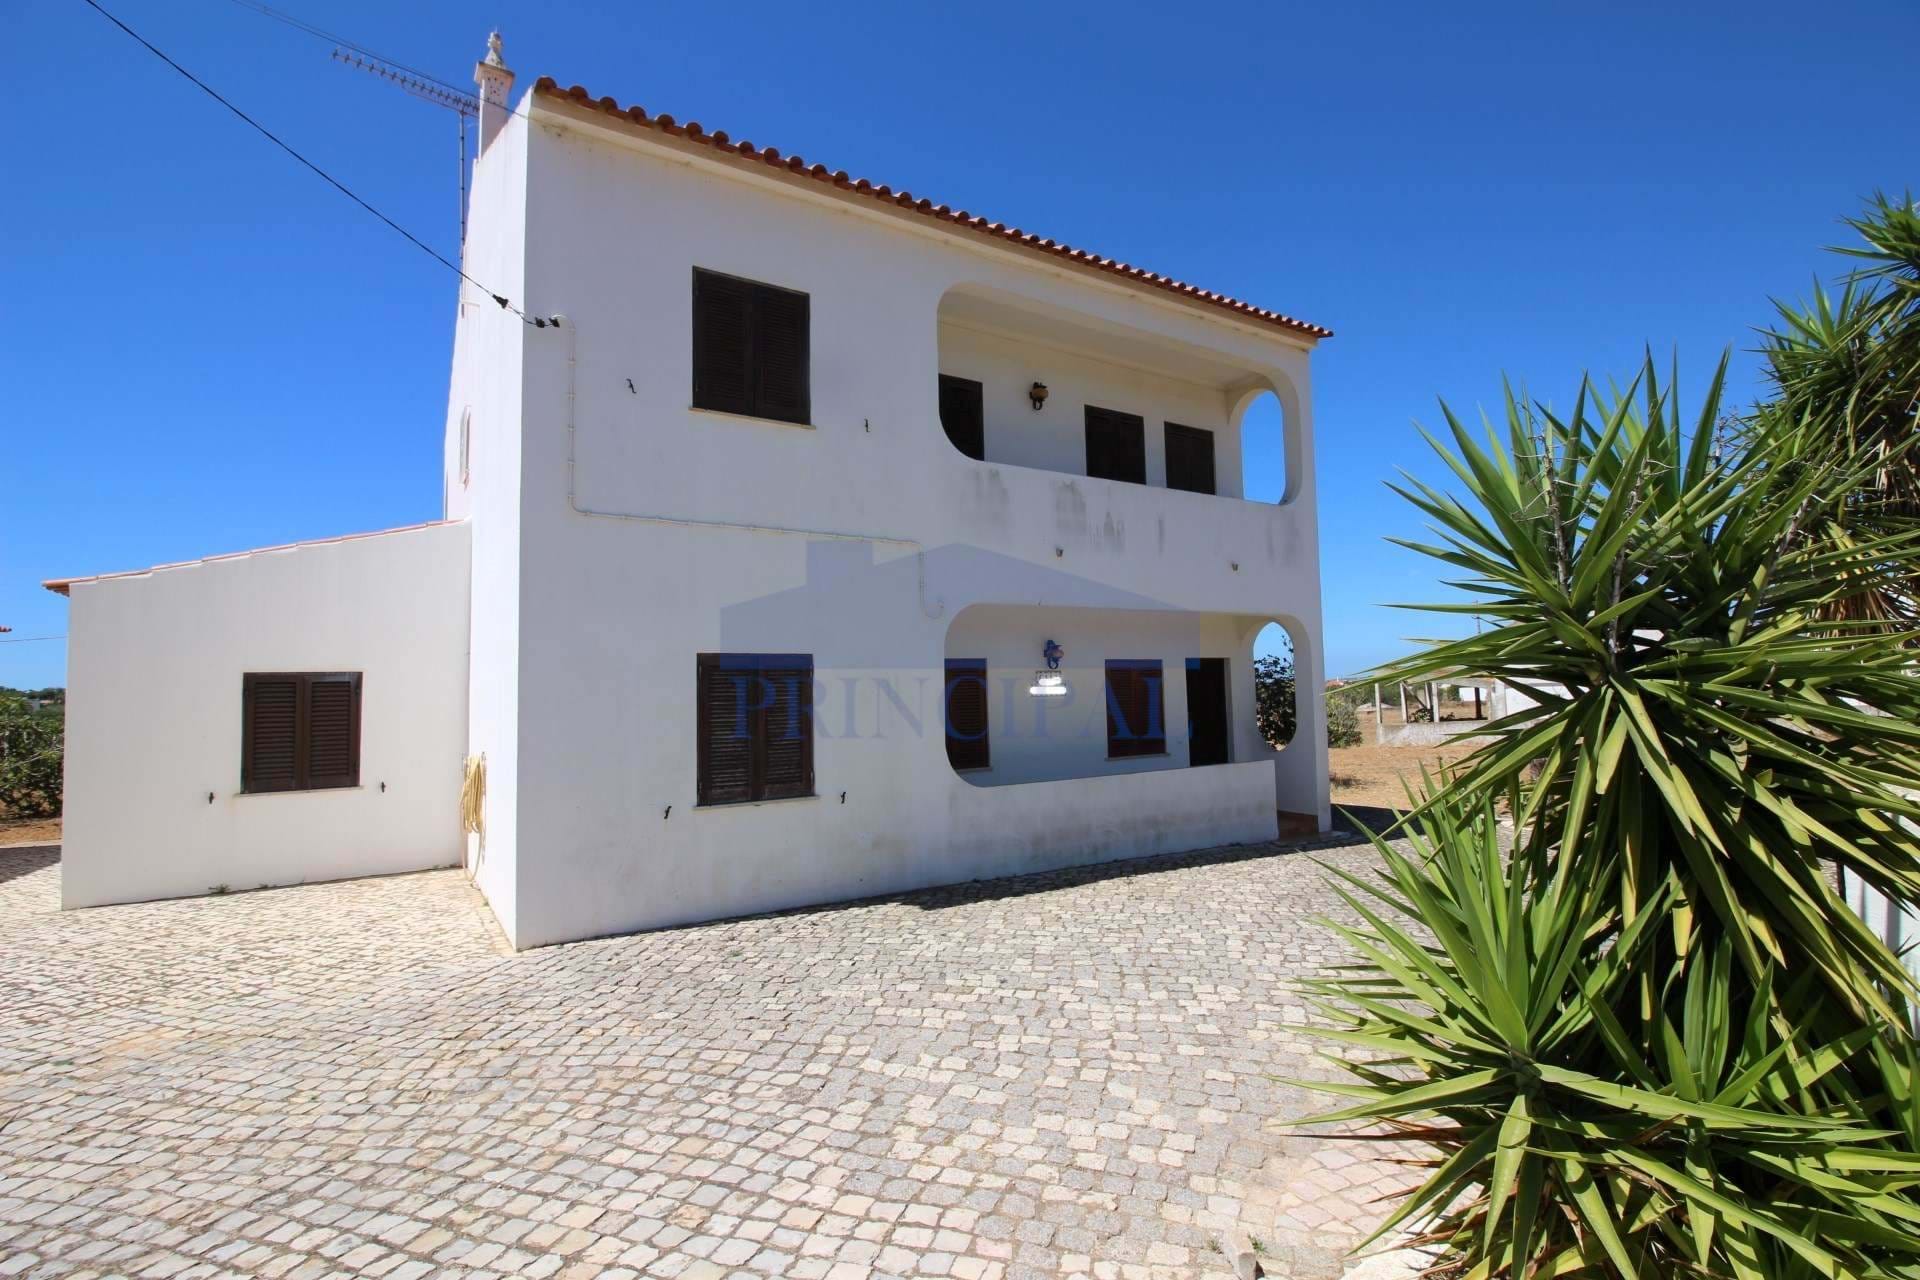 5+1 Bedroom Villa + Plot of Land 2790 m2 with well in Vale de Parra